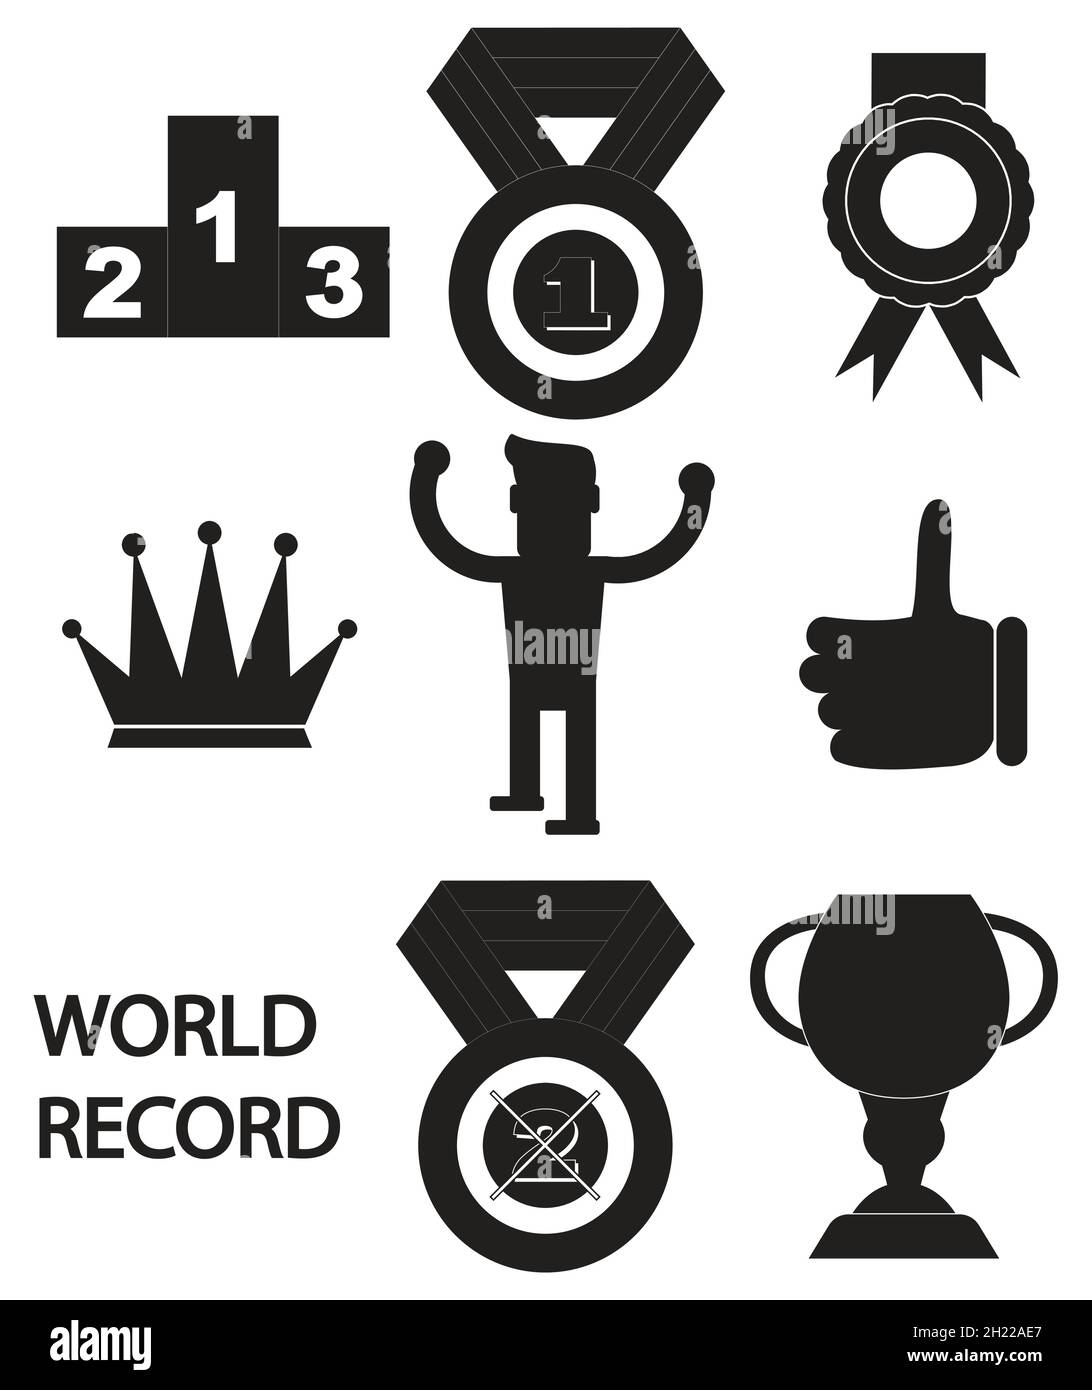 Die besten der Welt, Weltmeister, Weltrekord, ZIEGE, größte aller Zeiten, Ikonen Stock Vektor